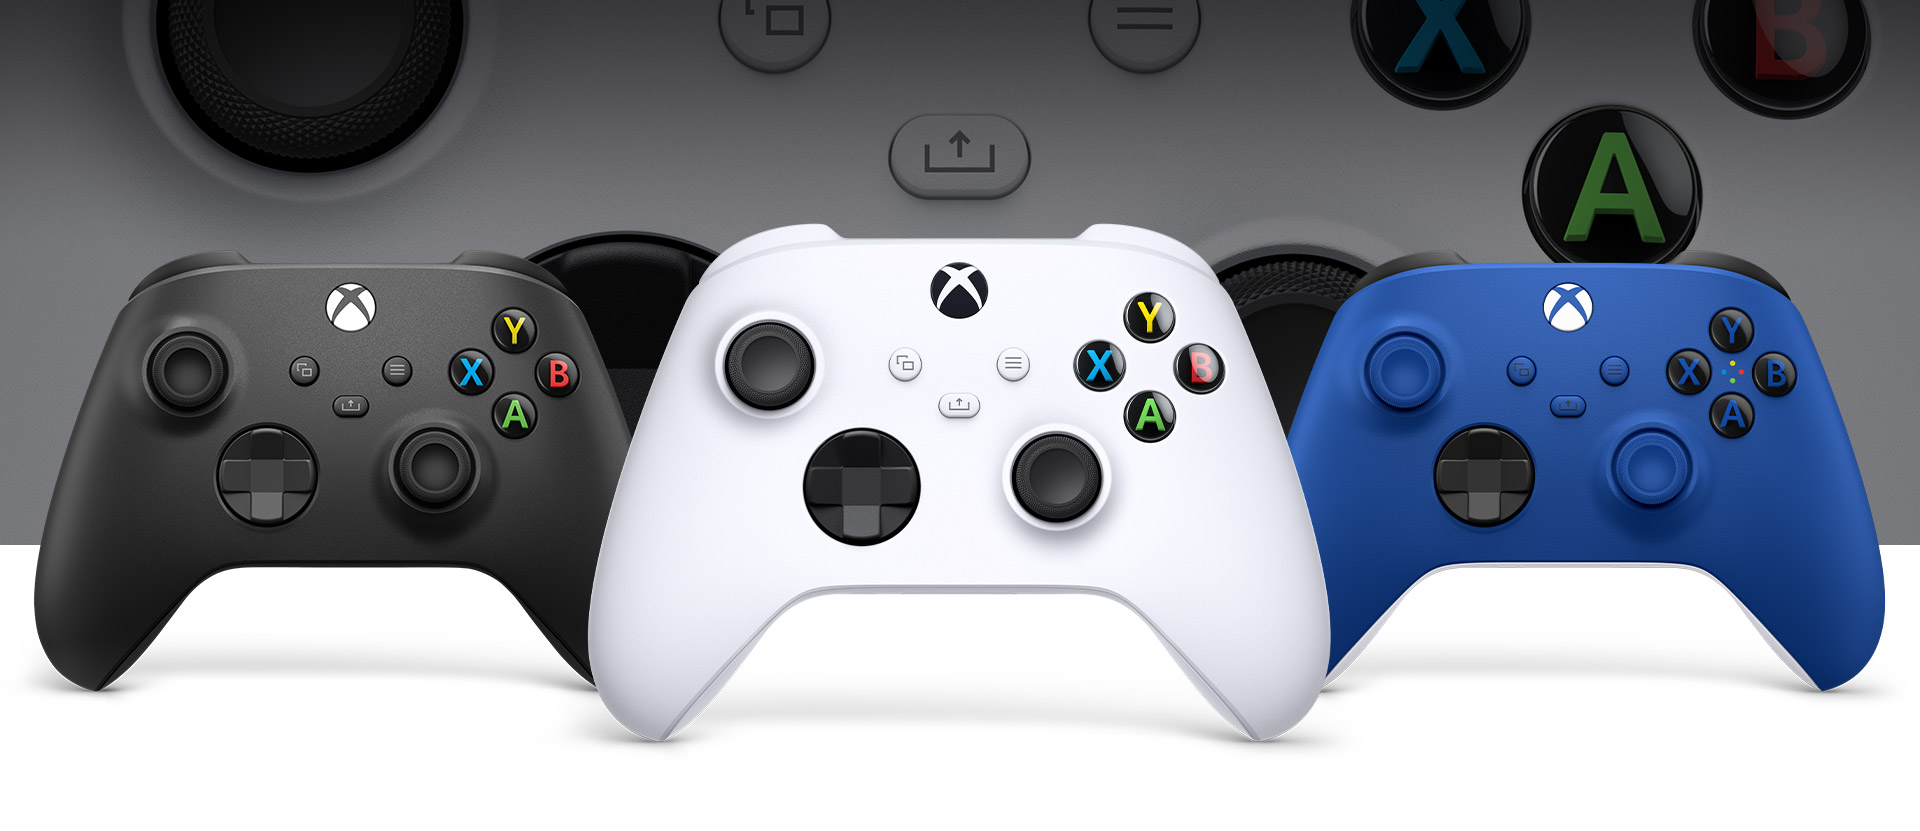 Xbox Robot Controller im Vordergrund, Carbon Black links daneben und Blue rechts daneben